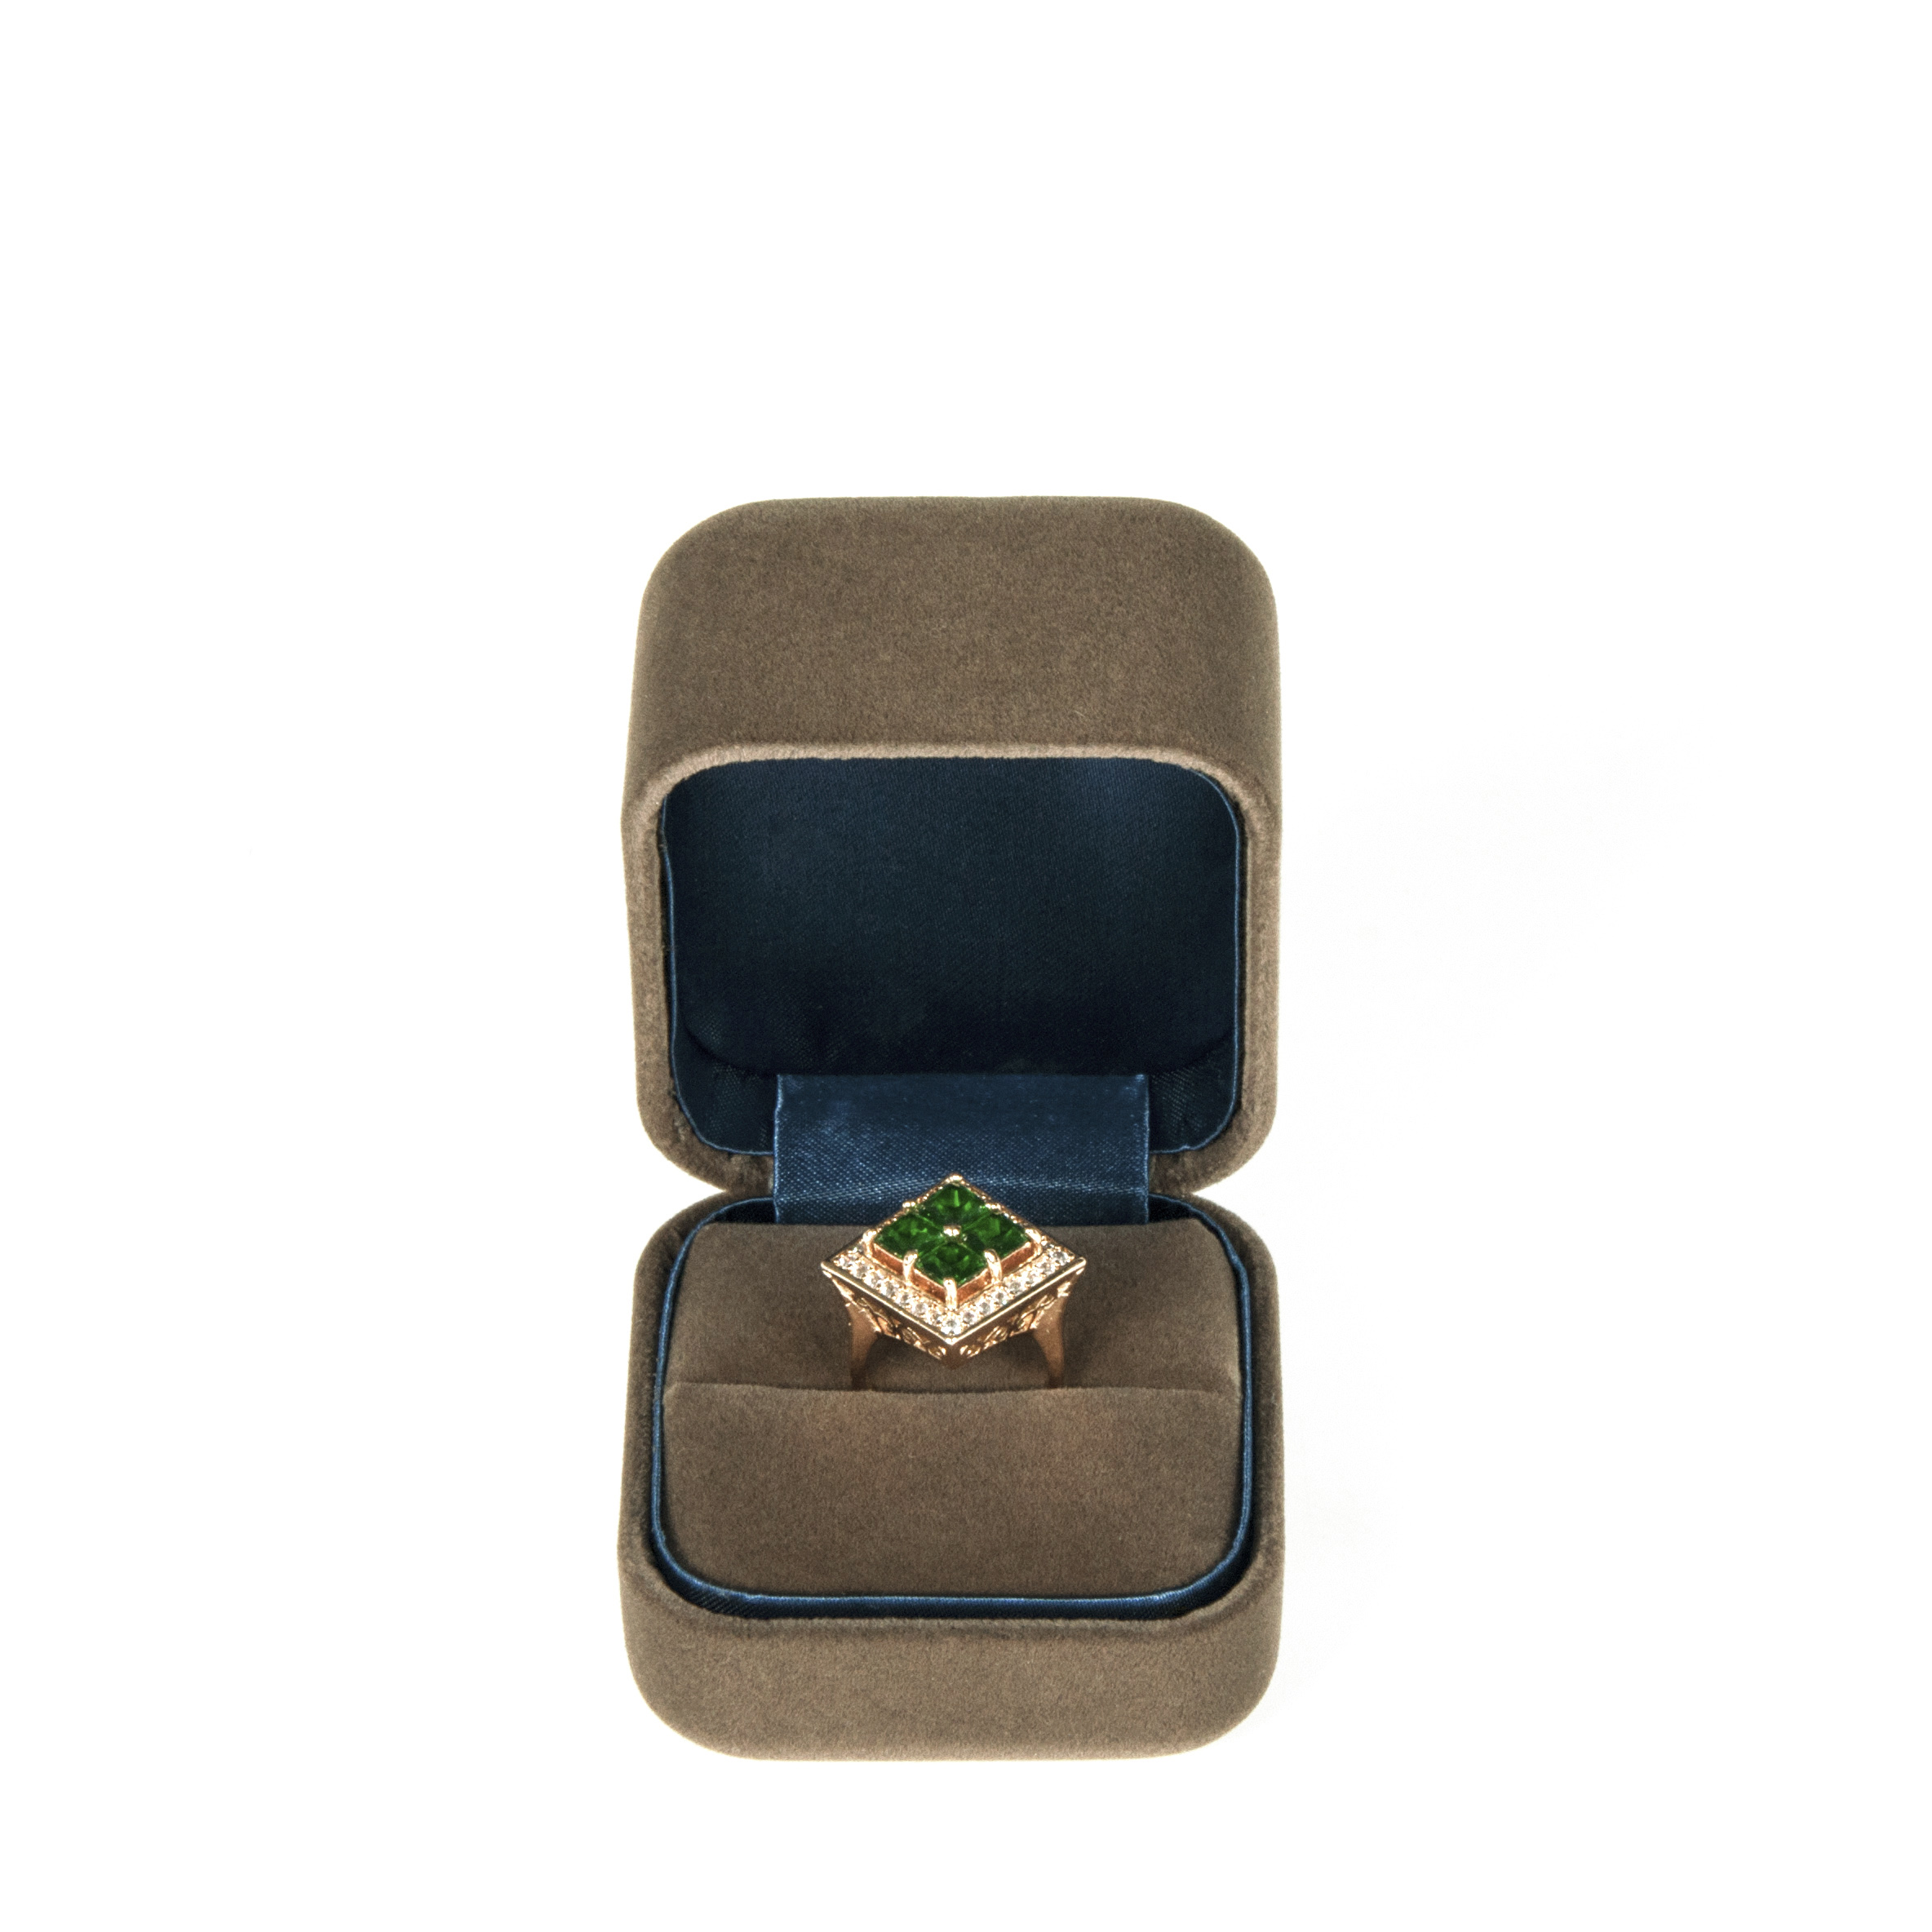 Projeto personalizado popular da caixa do anel de veludo para o pacote fino da jóia da extremidade elevada com logotipo imprimido com qualidade elevada da classe.